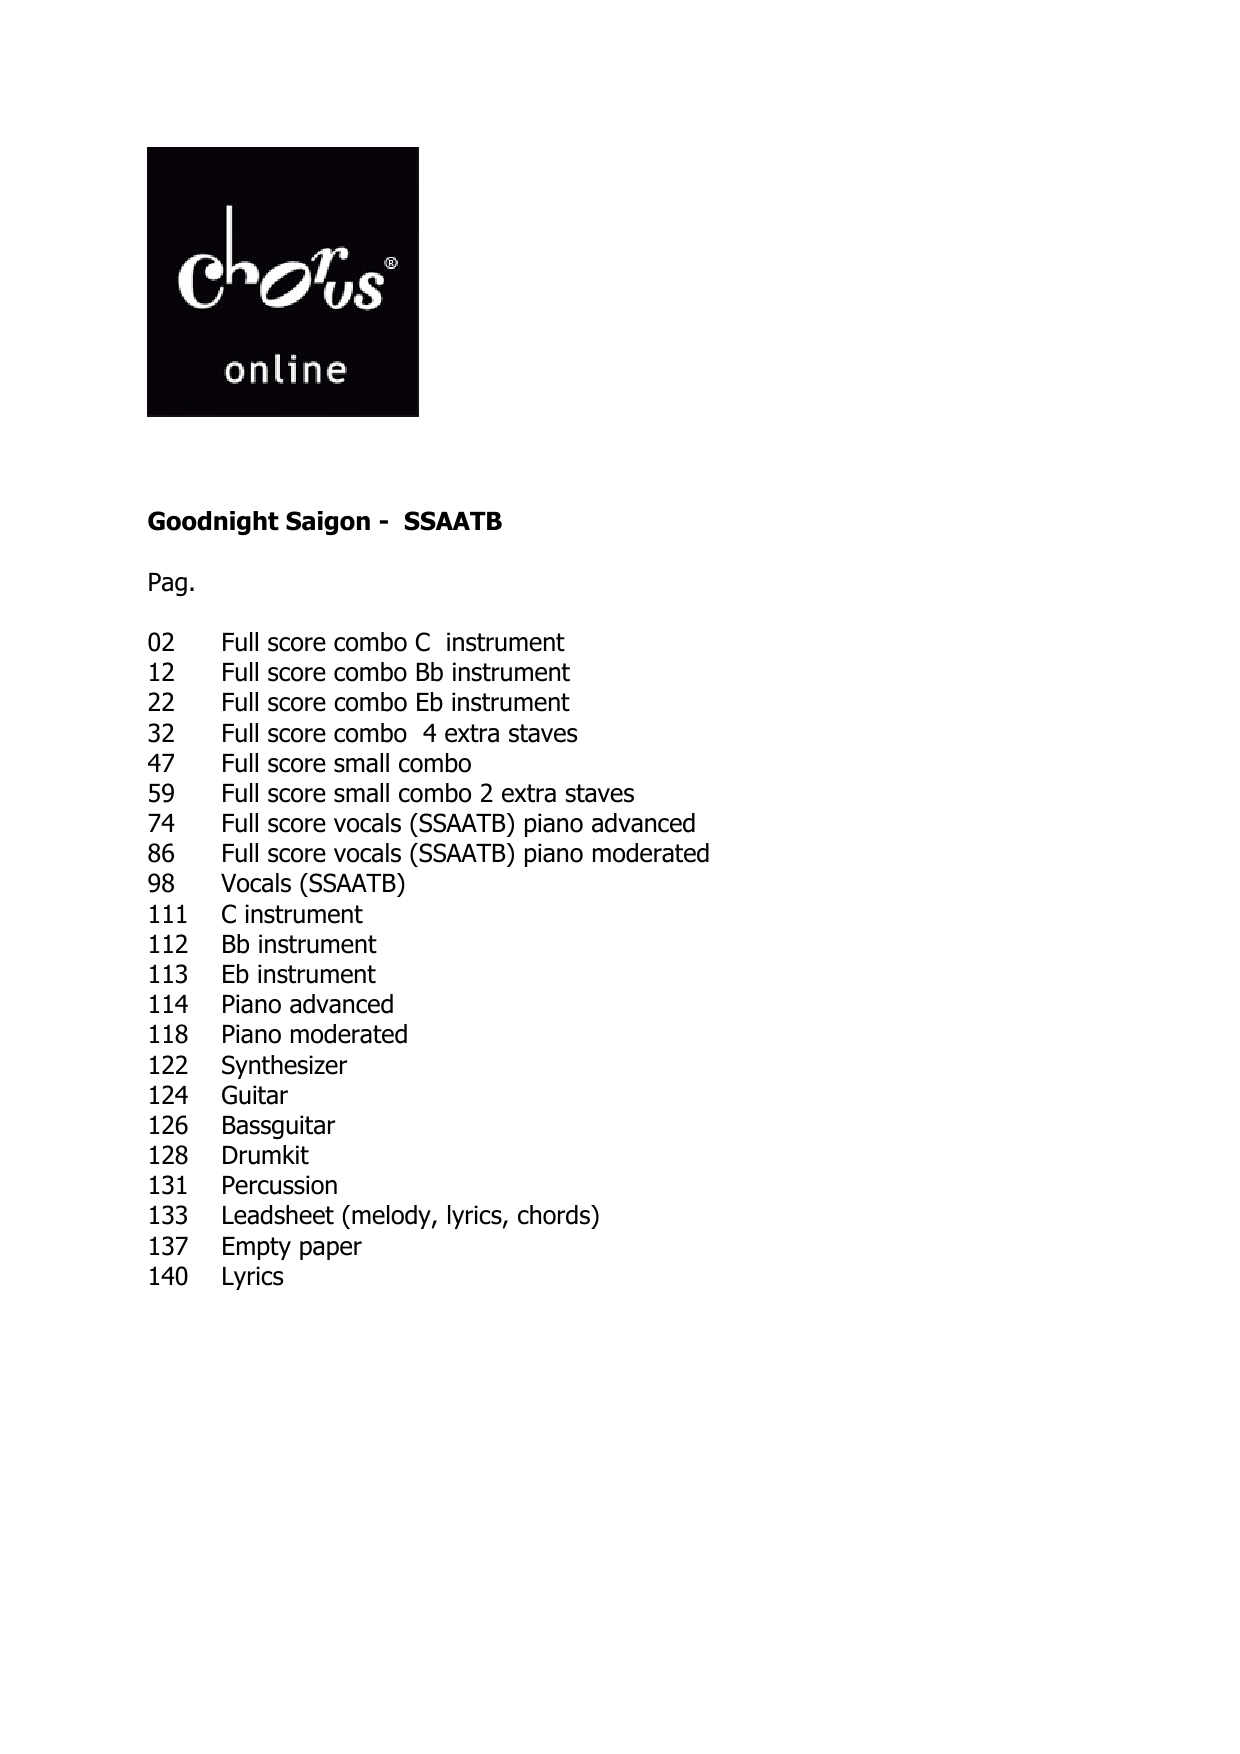 Billy Joel Goodnight Saigon (arr. Peter van Lonkhuijsen) sheet music notes printable PDF score